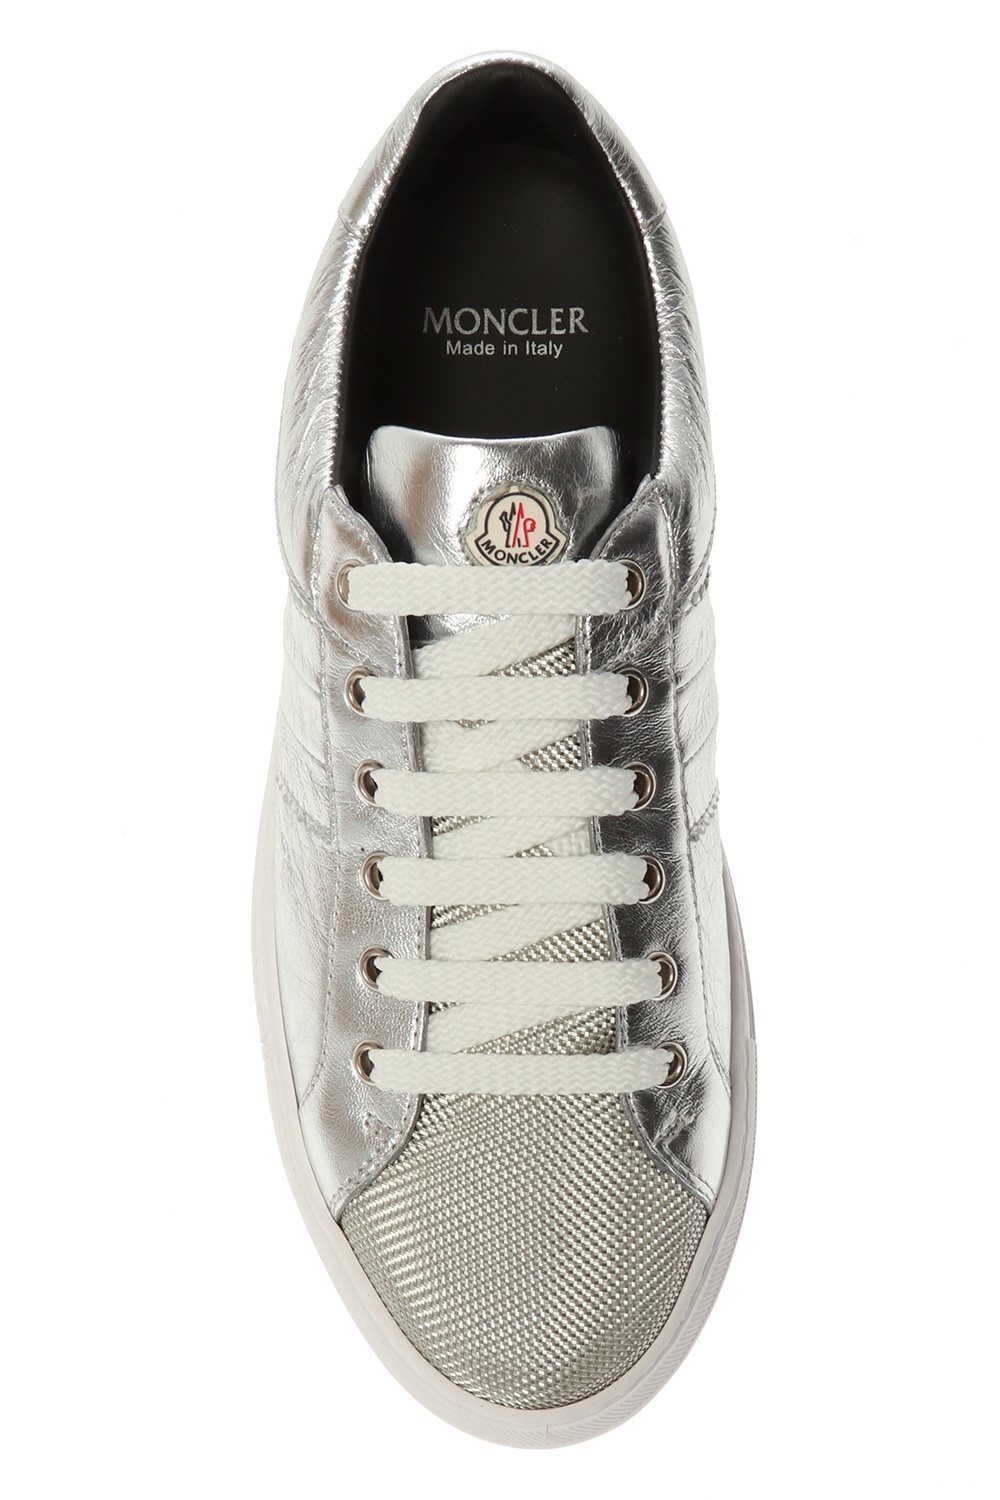 moncler tennis shoes